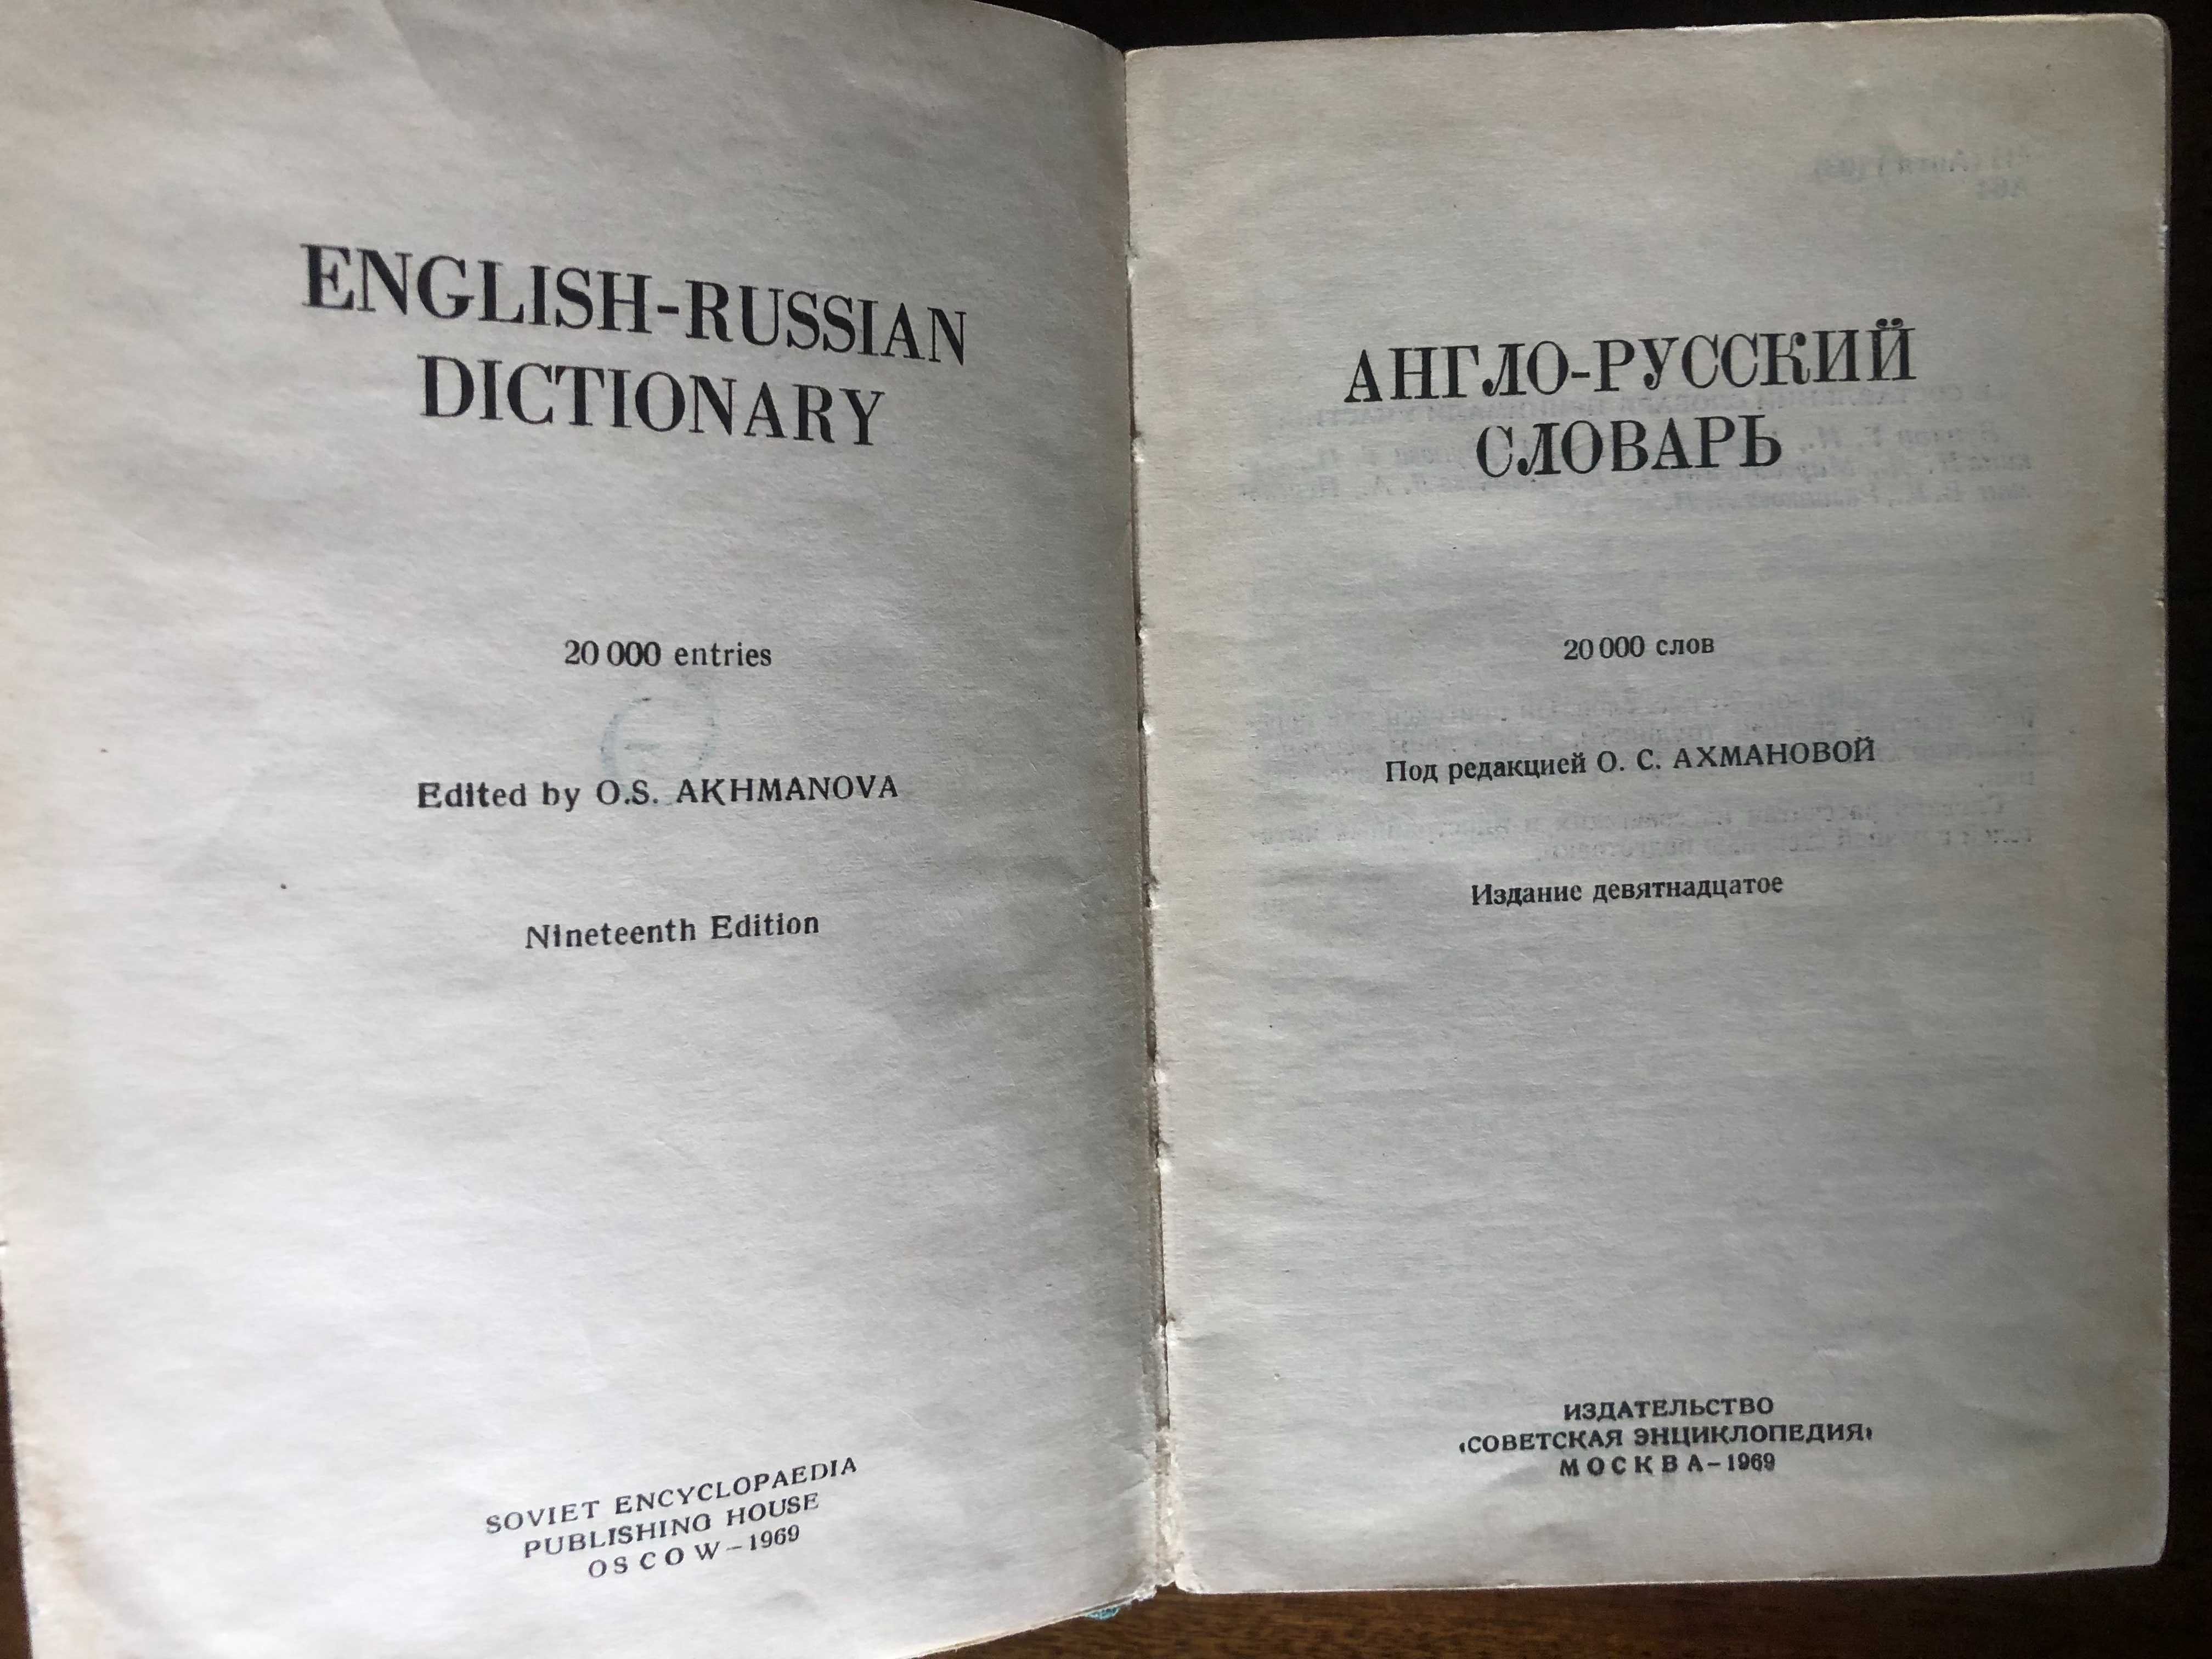 Англо- русский словарь